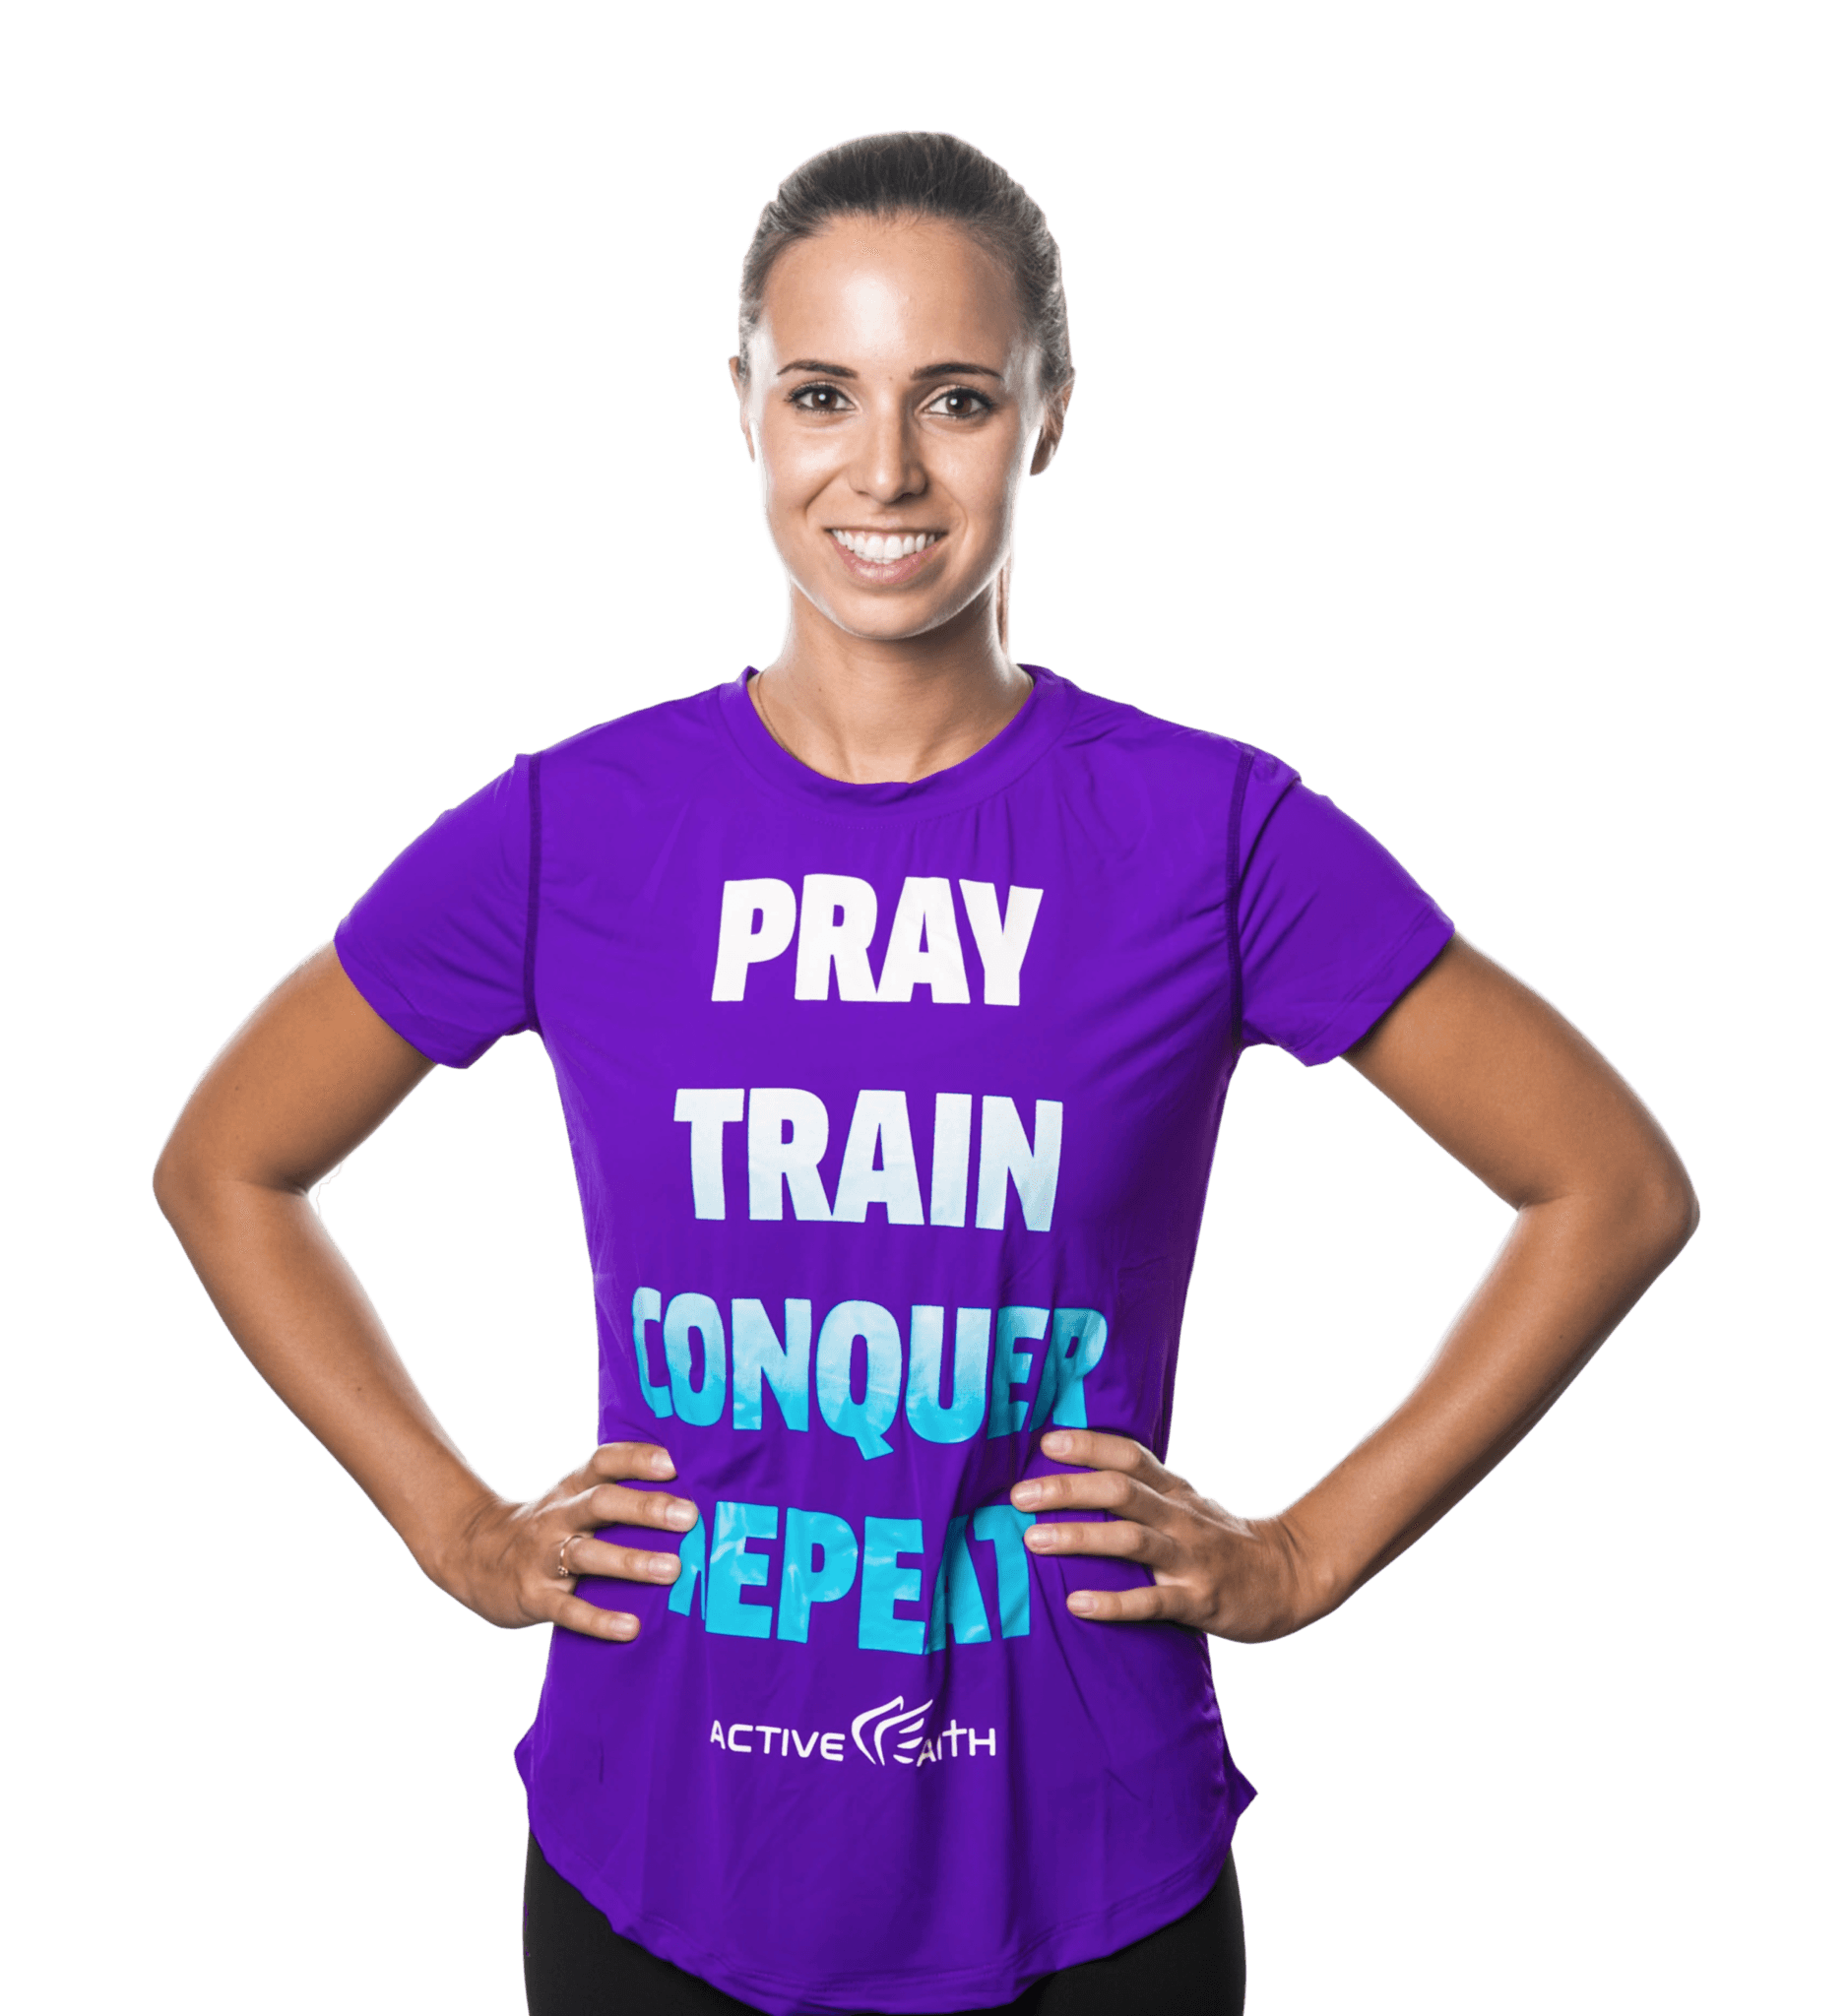 Women's "Pray Repeat" Word Shirt